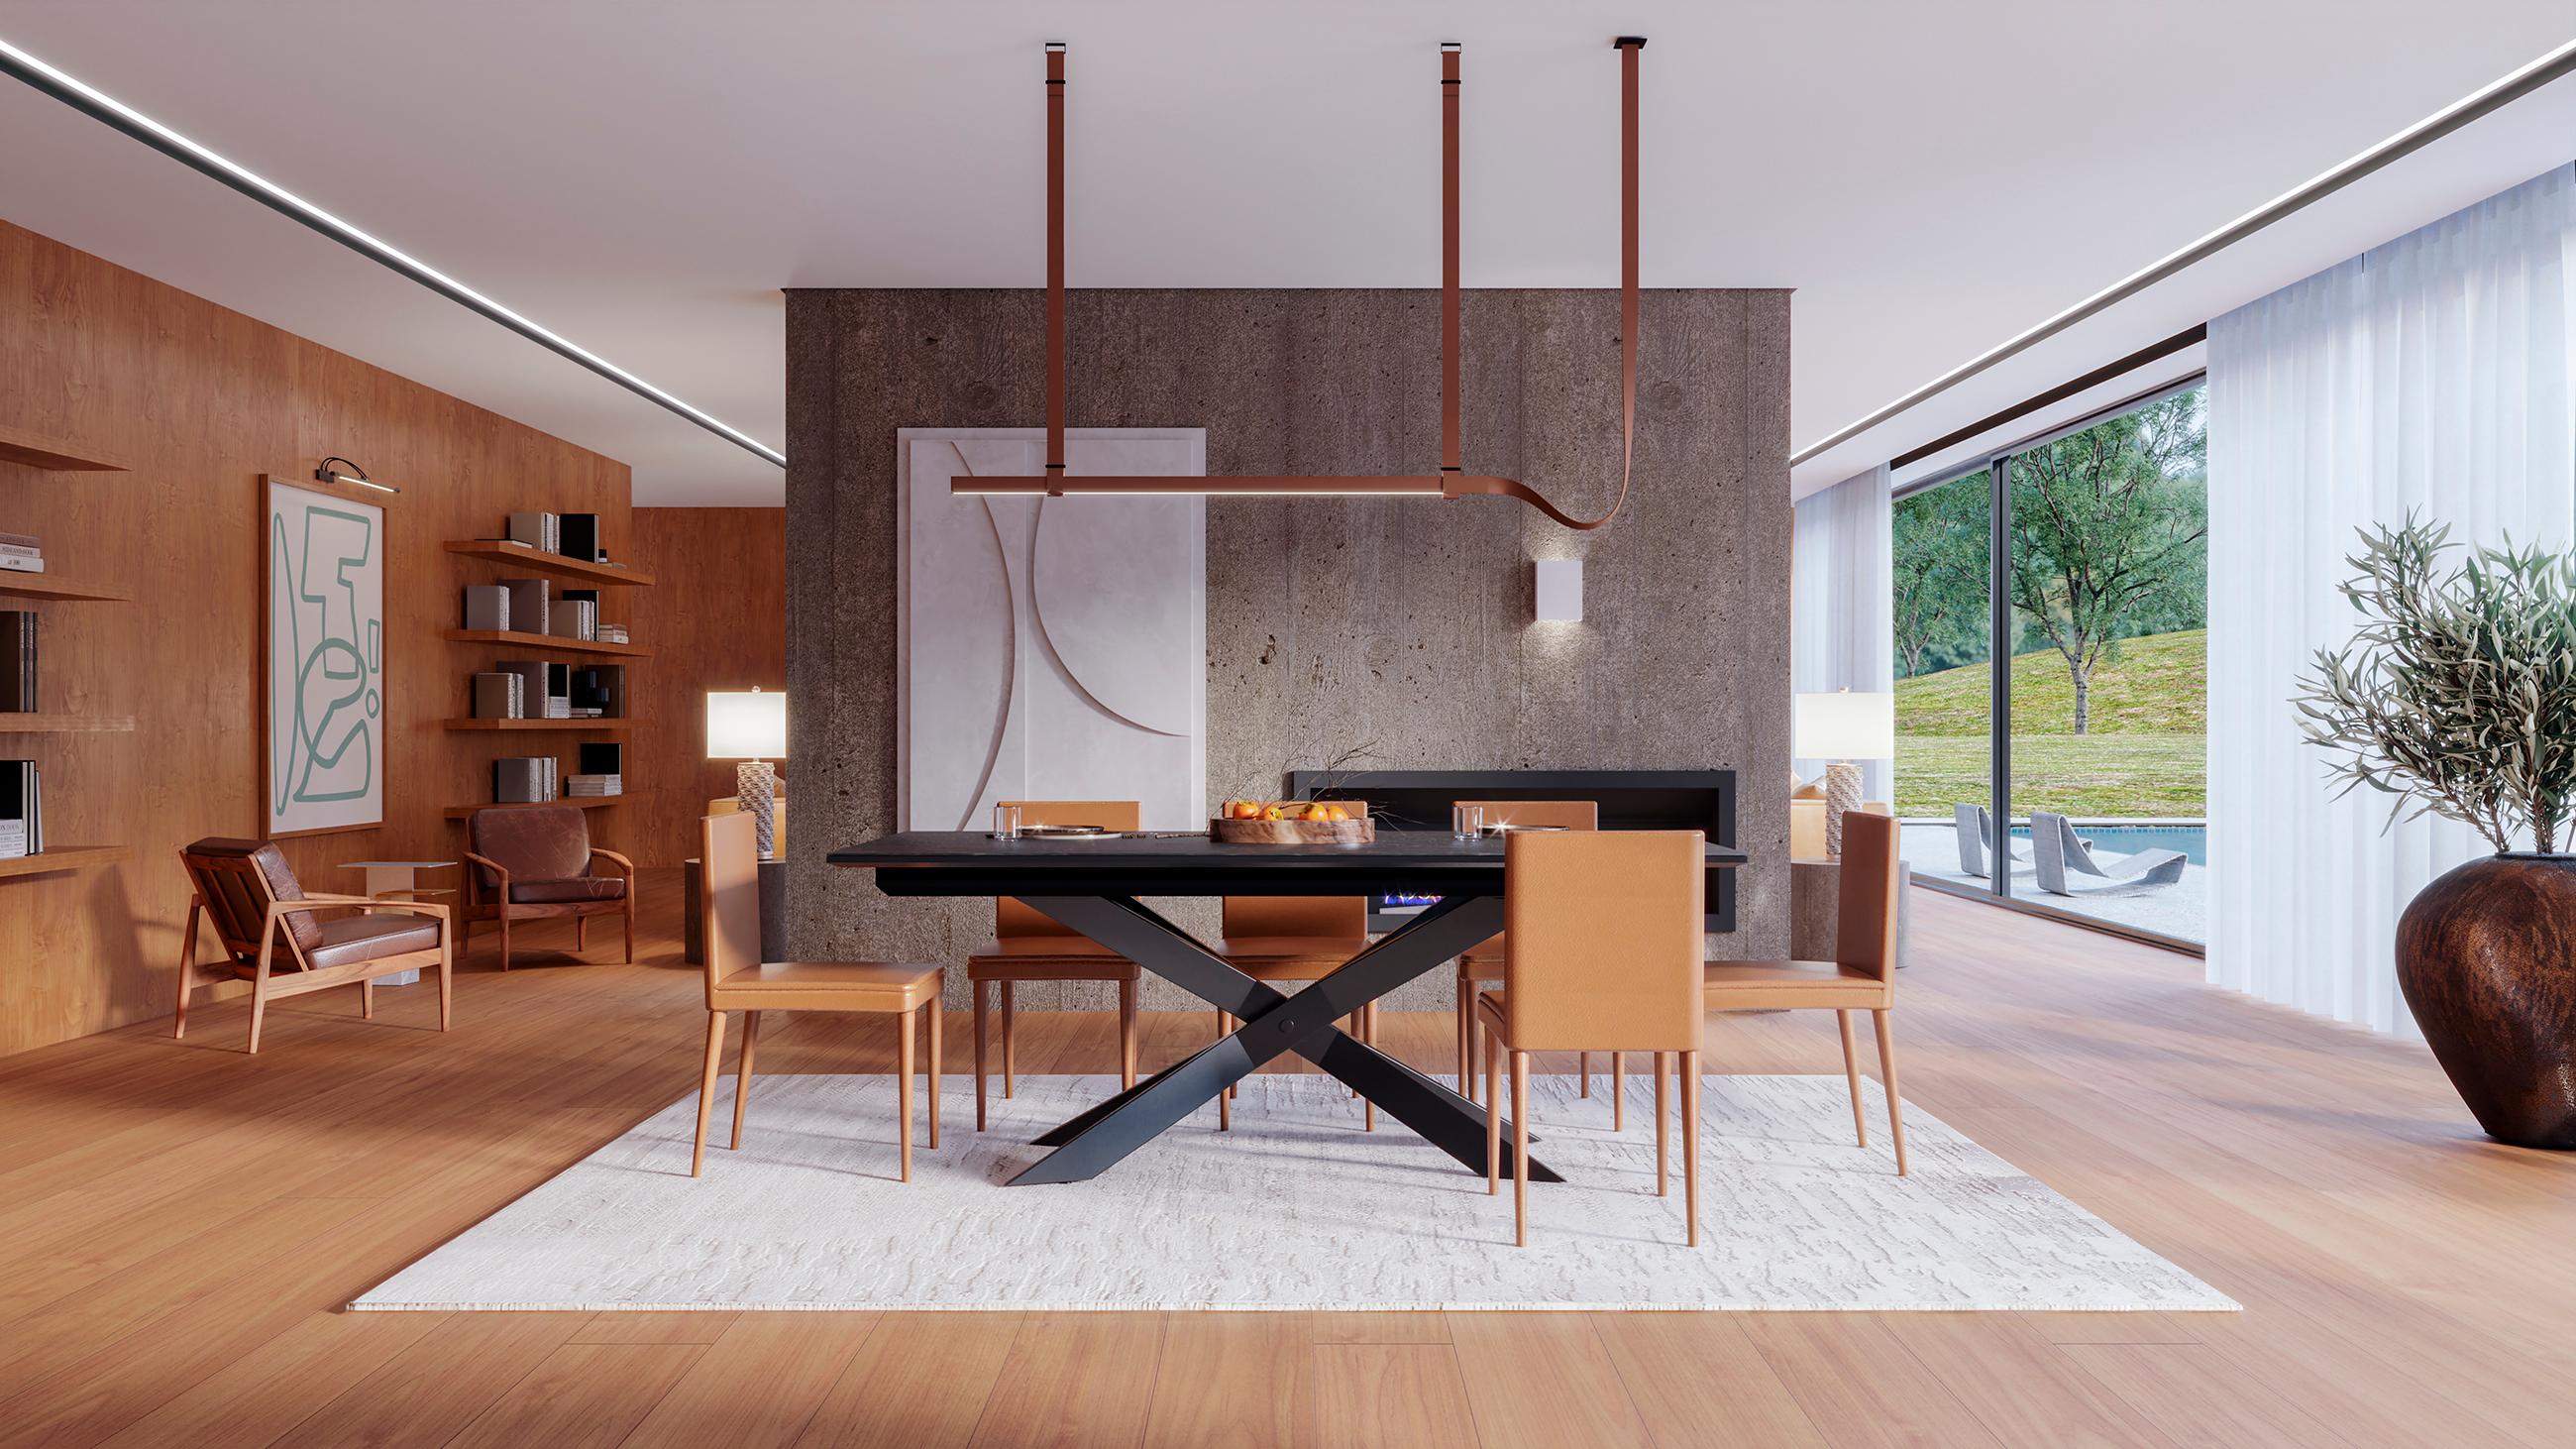 La table à manger Carat s'inspire du travail architectural et visuel des immeubles de grande hauteur, mettant en valeur la beauté du mobilier dans une ligne rigoureuse, méthodique et verticale. Cette table supérieure en céramique peut être utilisée